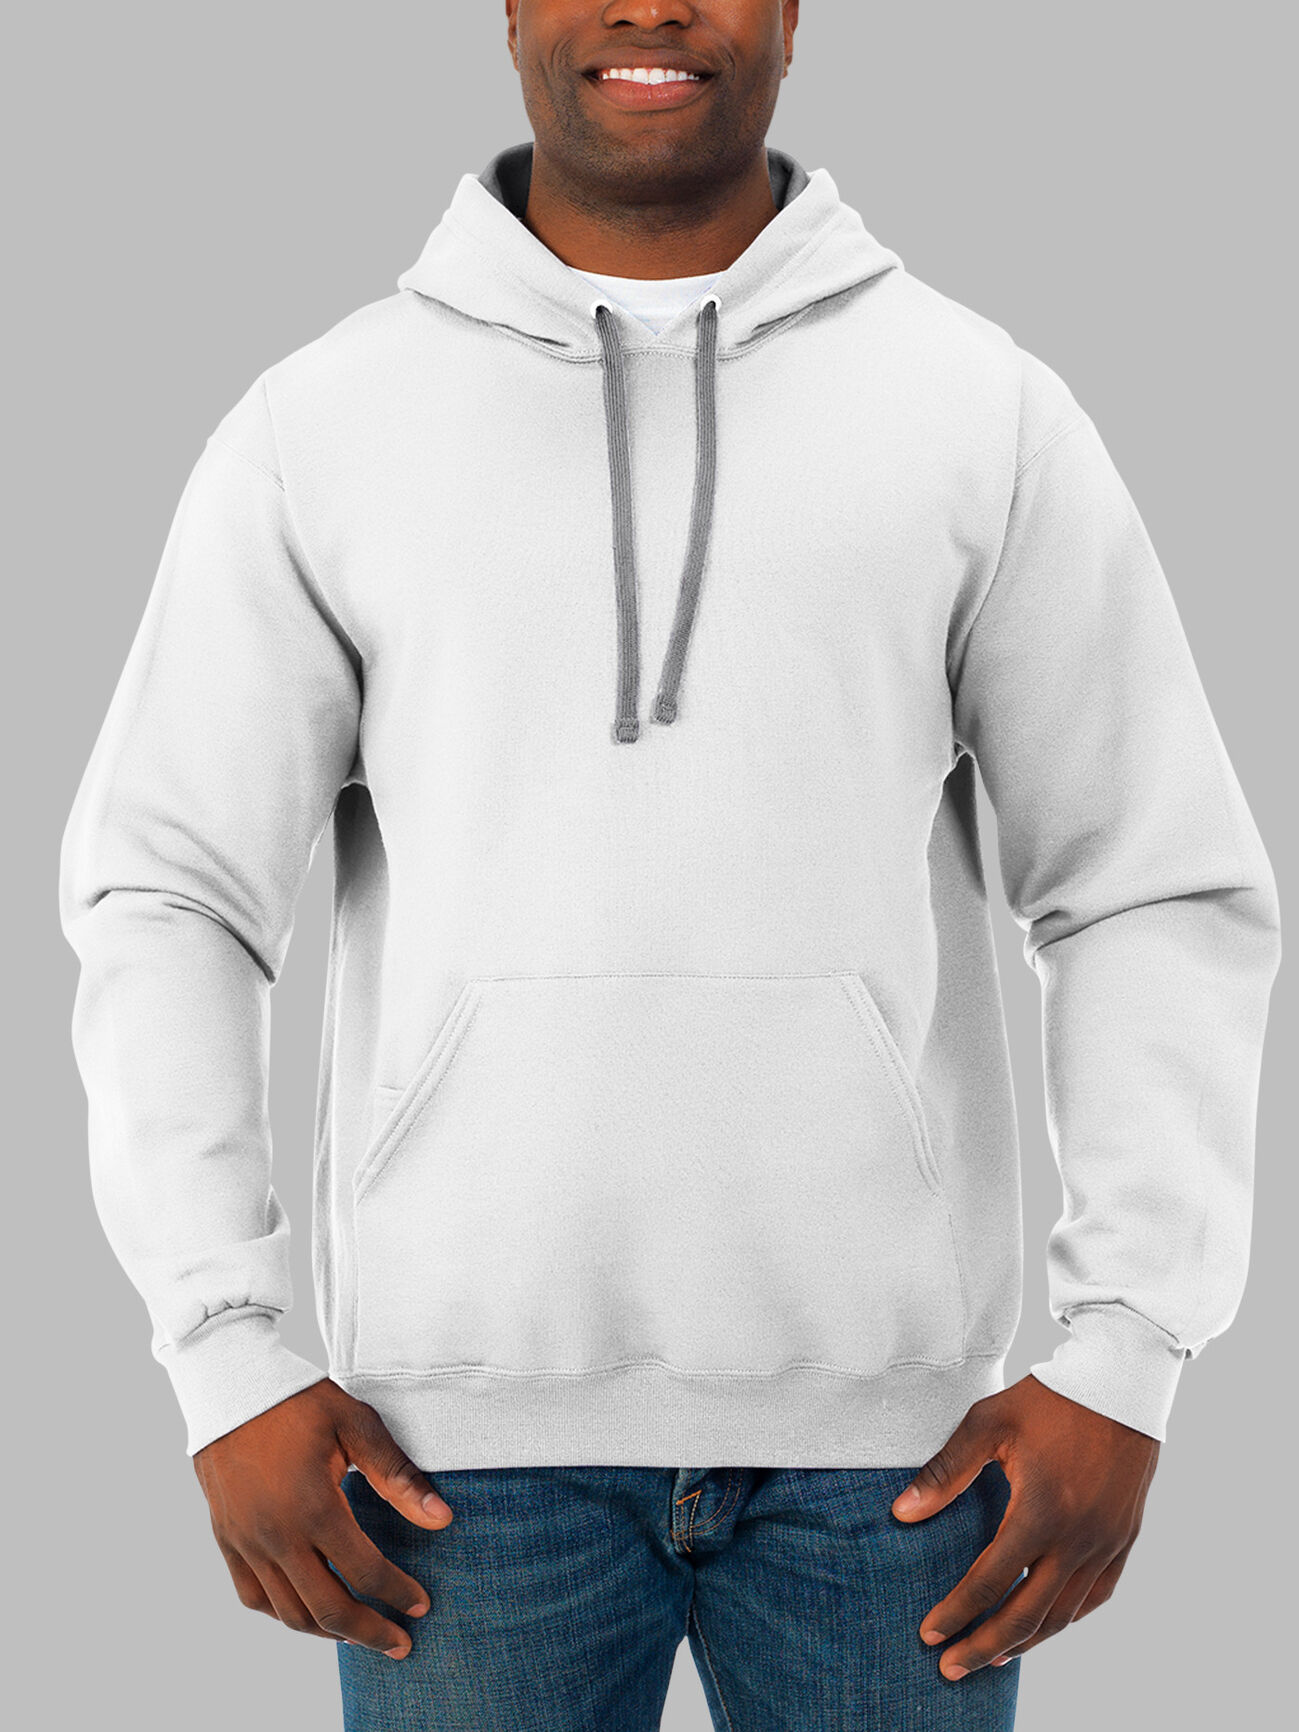 Men's Supersoft Fleece Hoodie Sweatshirt, Extended Sizes